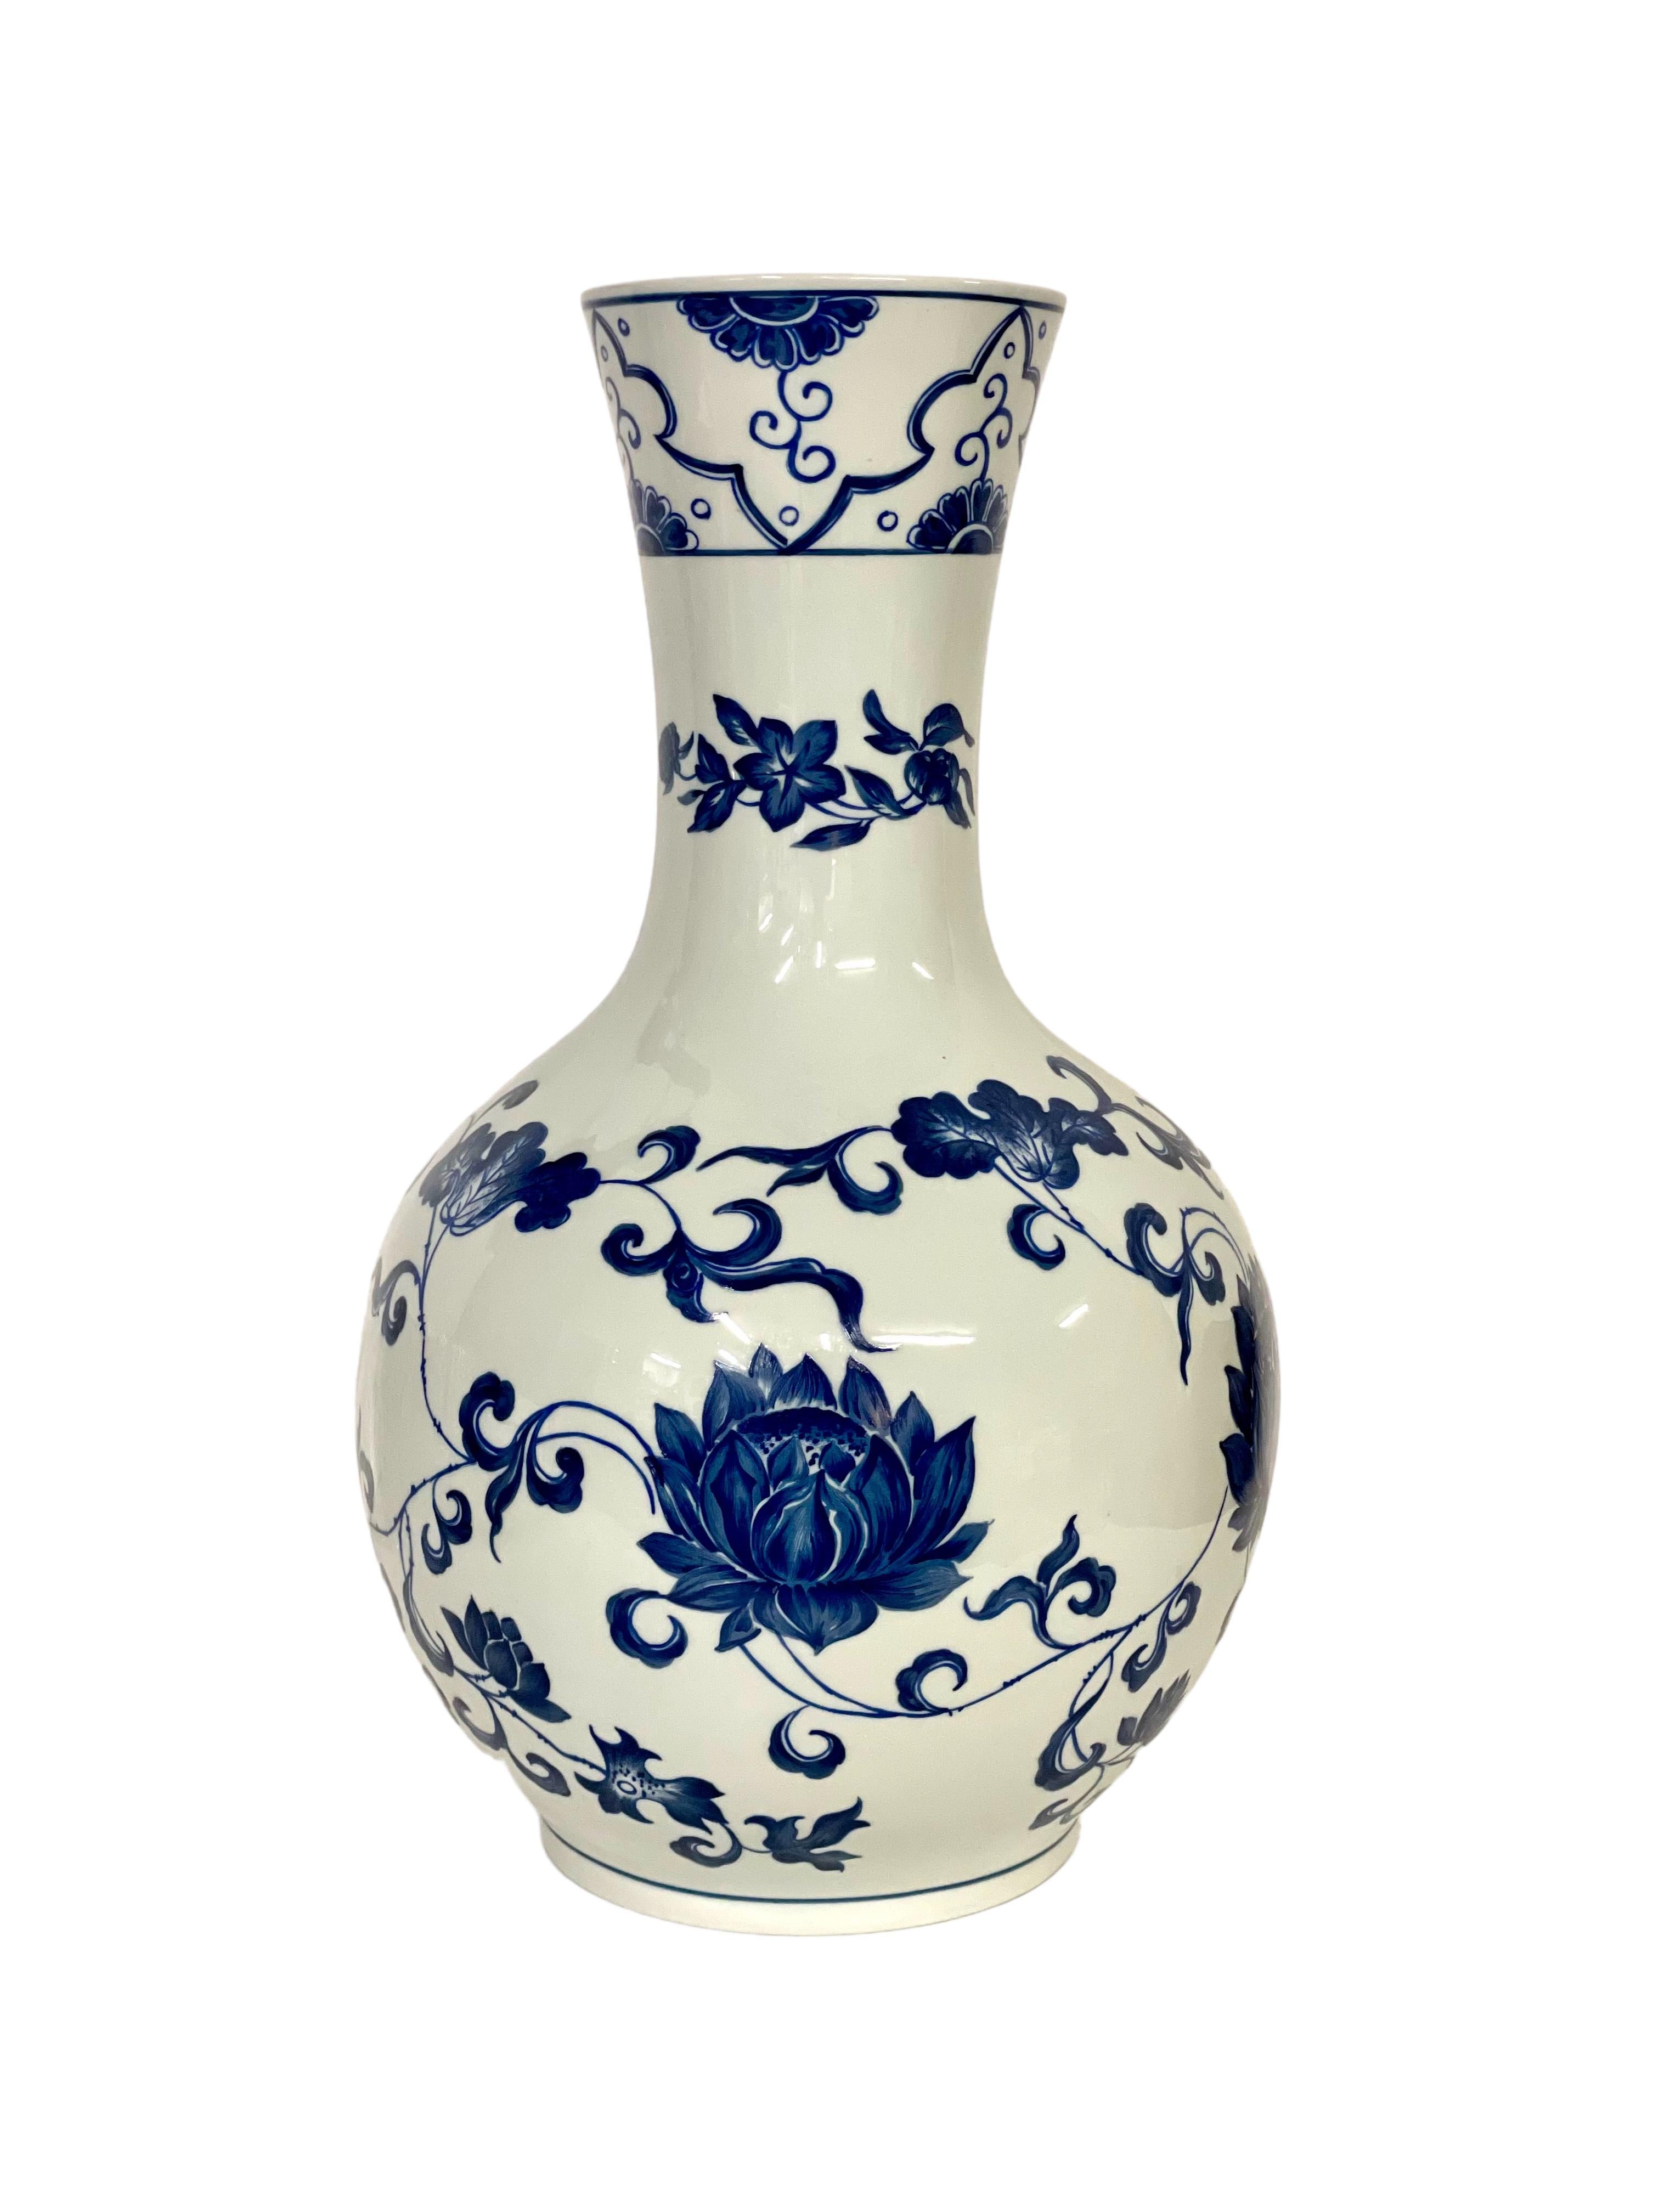 Ce vase en porcelaine de Paris de la fin du XIXe siècle, magnifiquement décoré d'un motif peint à la main de fleurs bleues sur fond blanc, est entièrement émaillé à l'intérieur et à l'extérieur. Simple mais élégant, ce grand vase au col étroit est